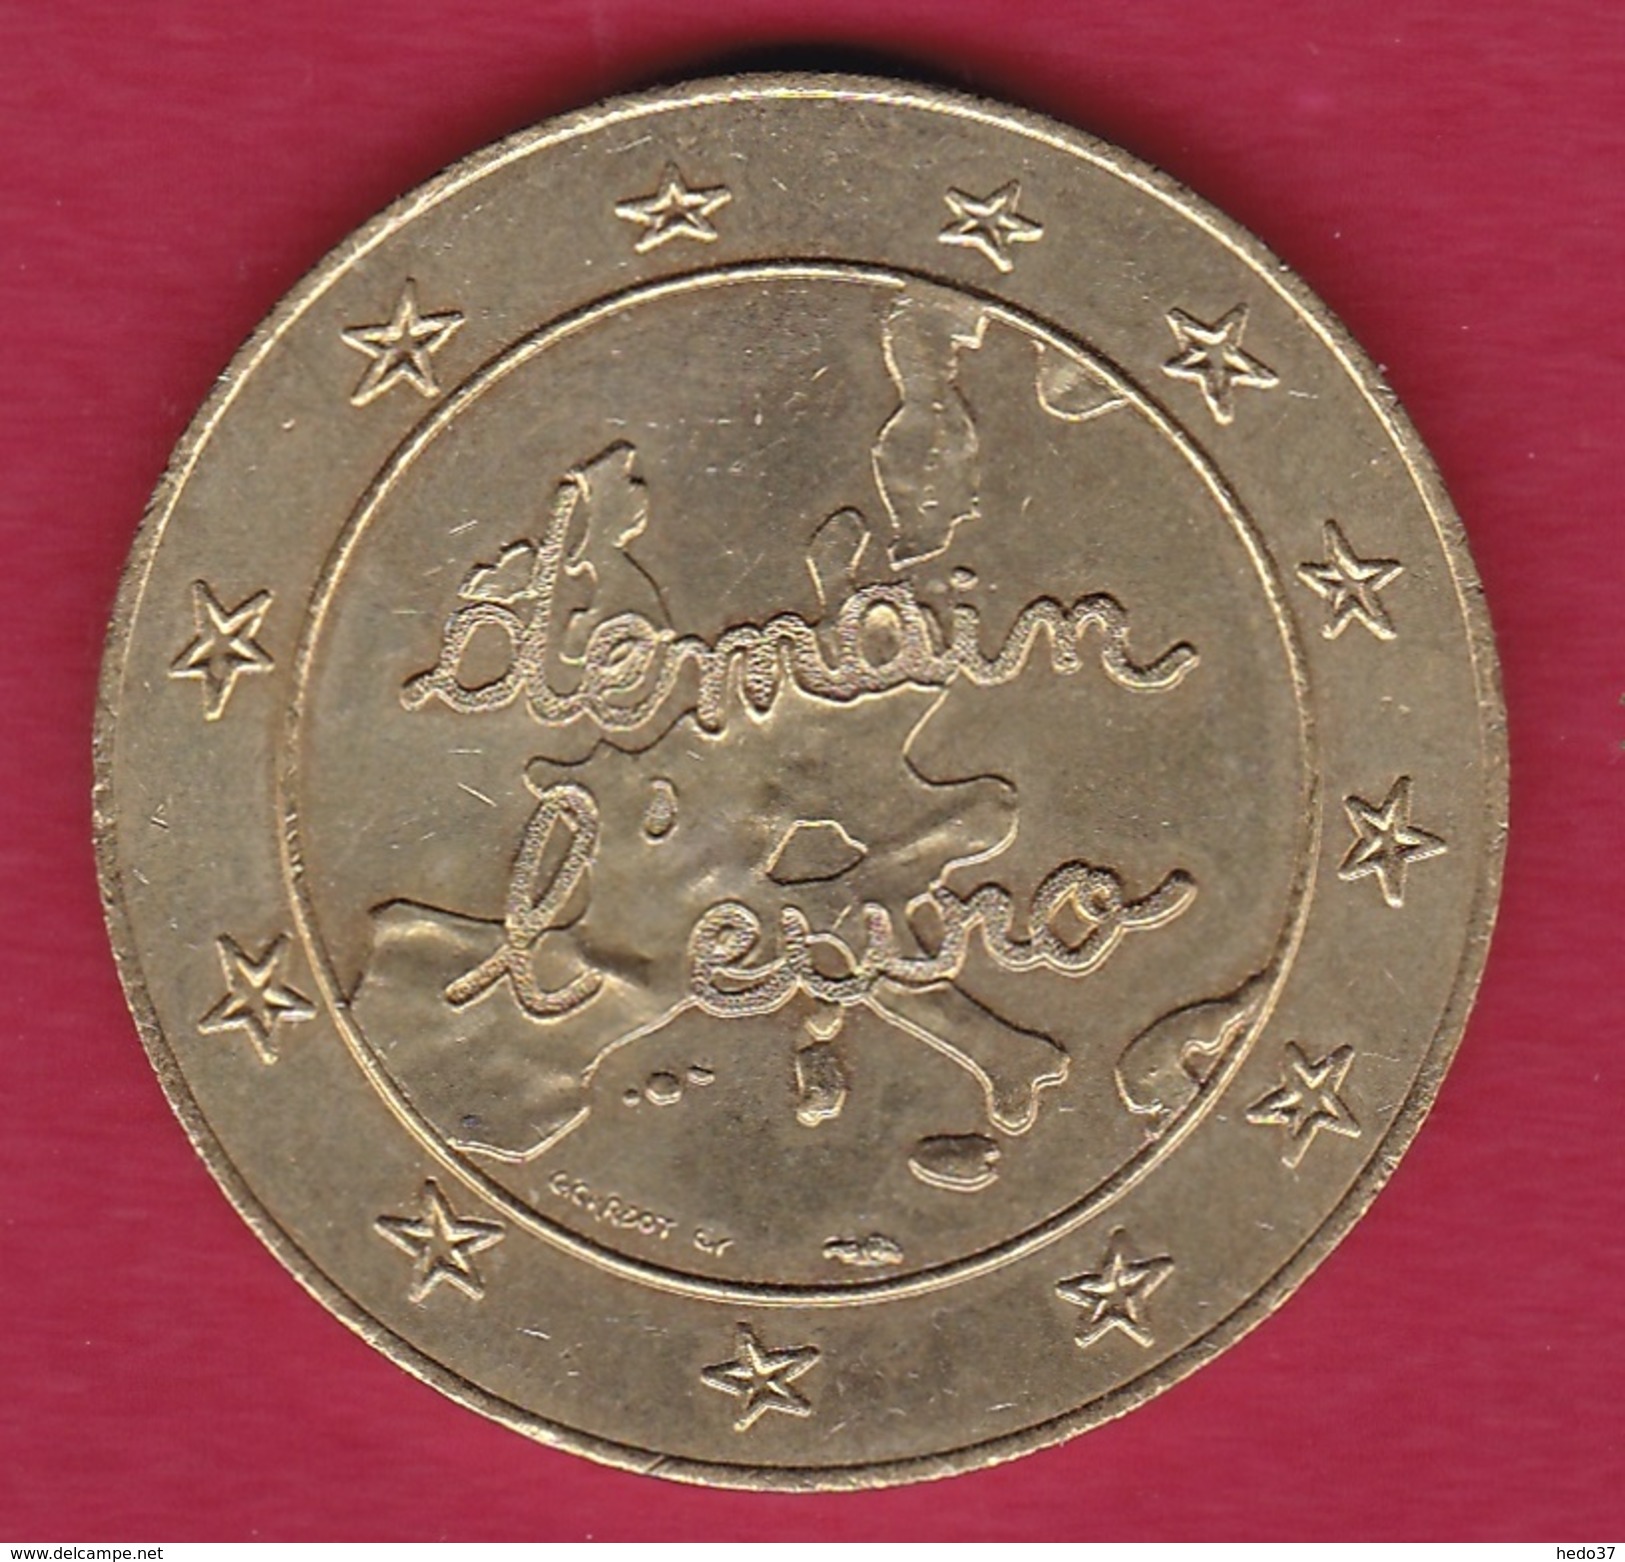 France - Magasin Leclerc - 1½ Euro 1996 - Euros Des Villes